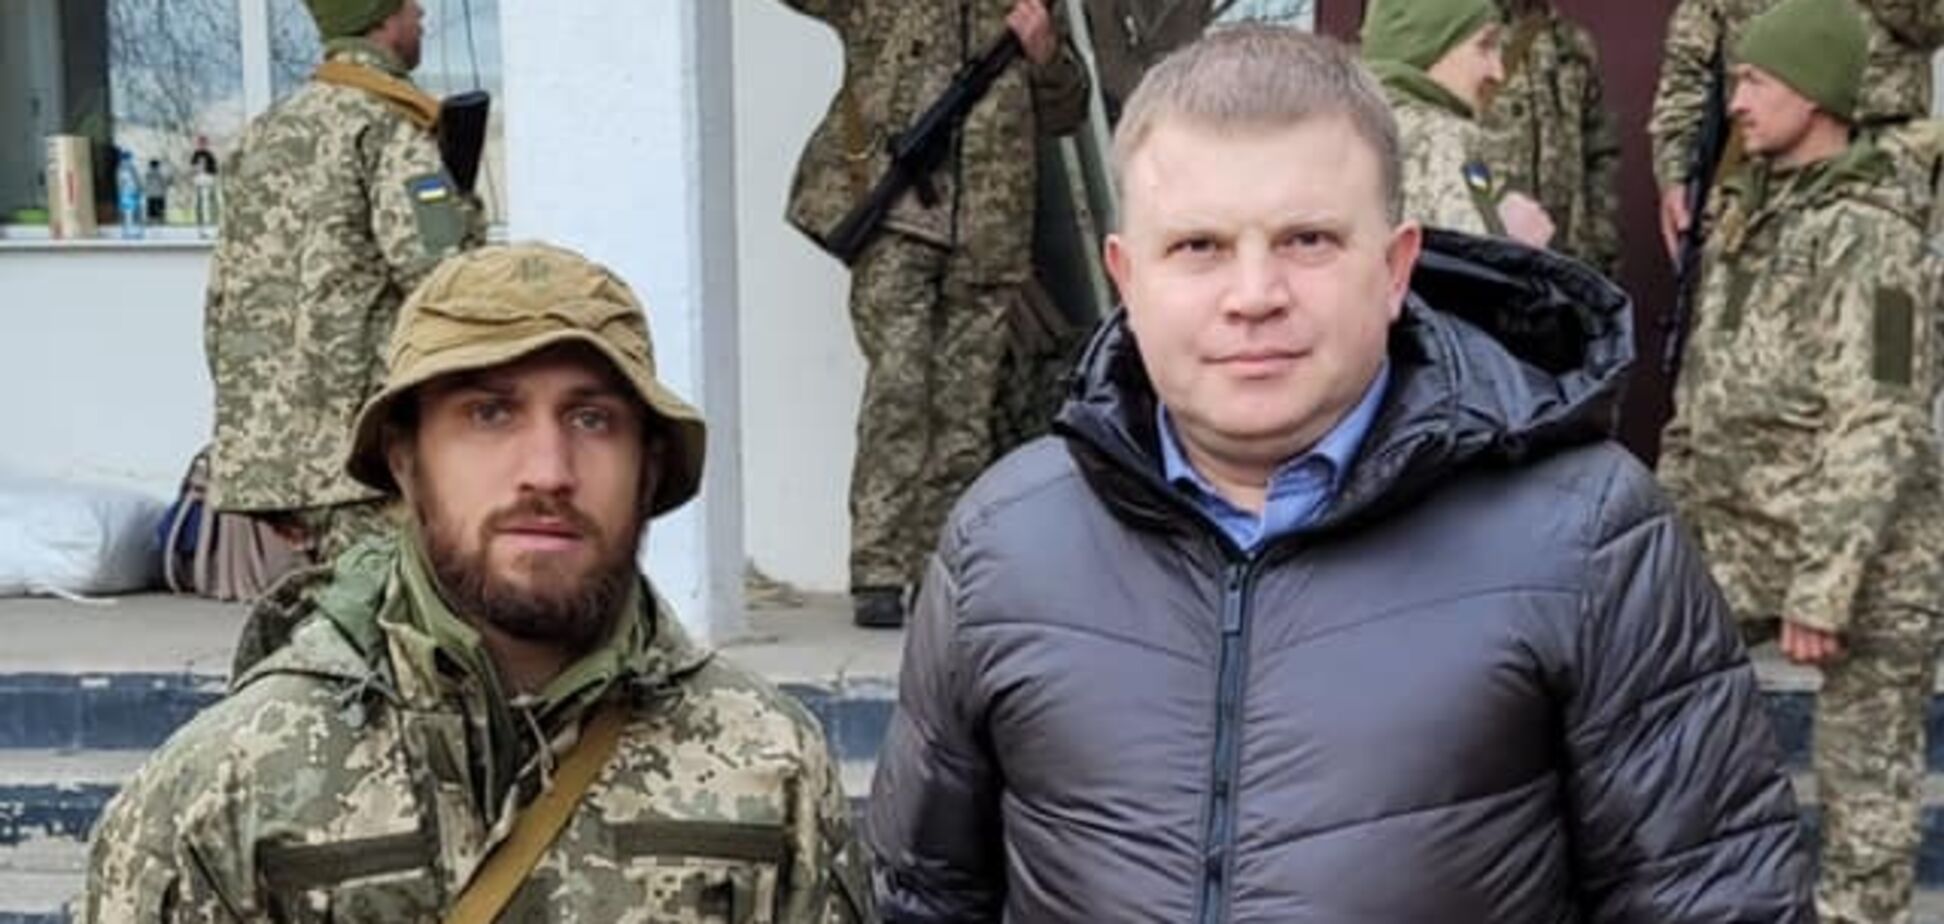 Ломаченко взял в руки автомат, чтобы защищать Украину от России. Фотофакт